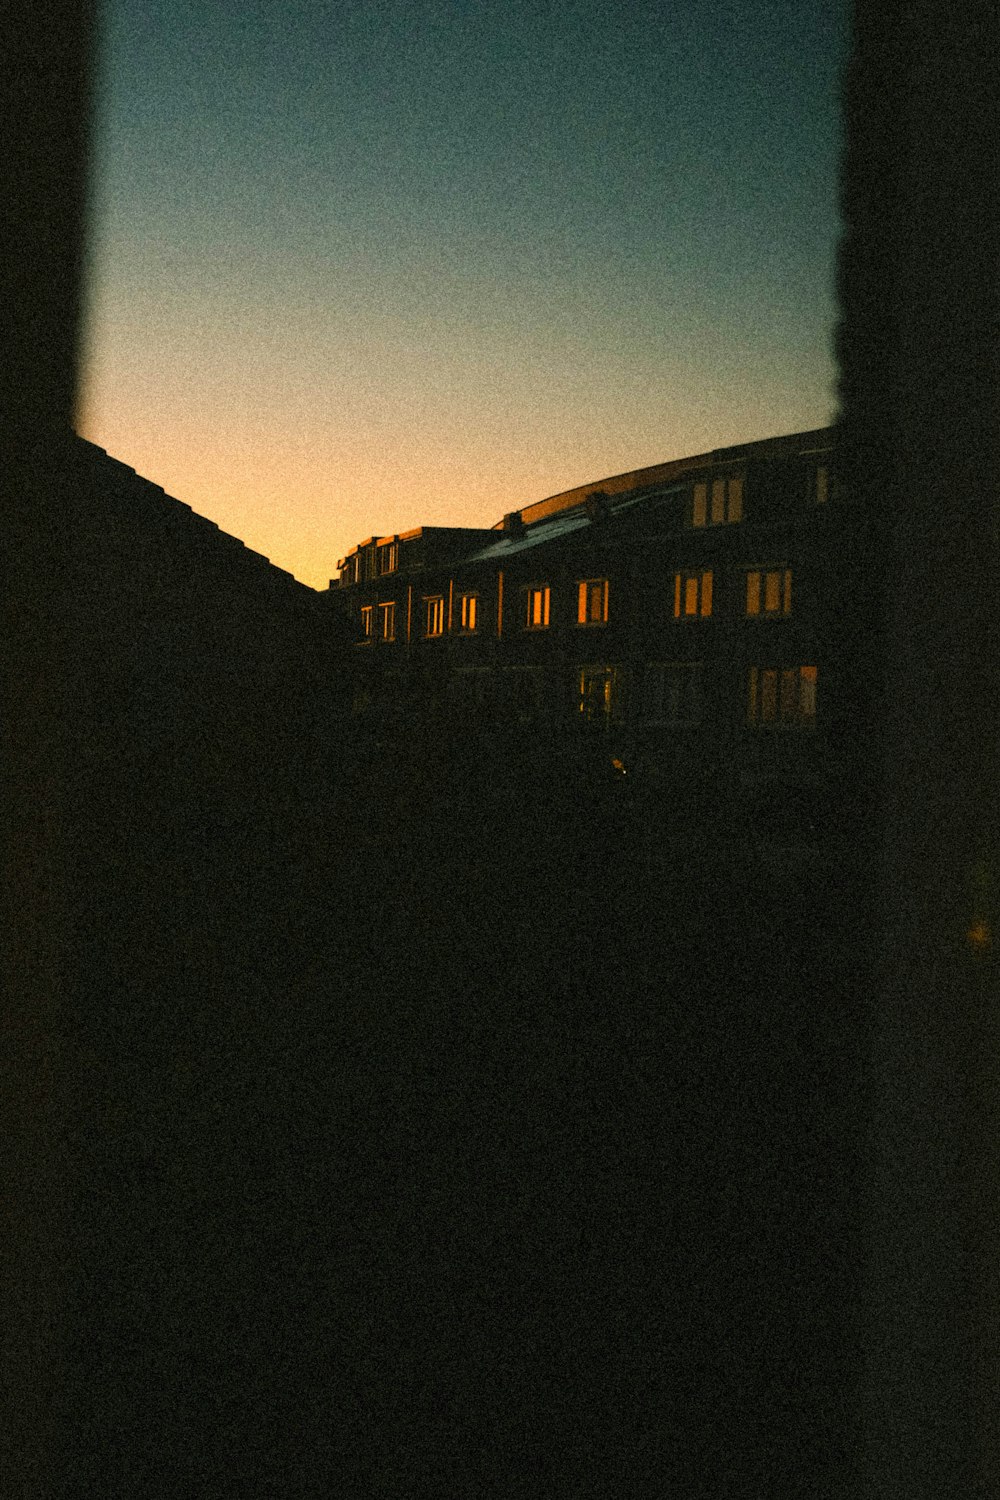 une vue d’un bâtiment depuis une fenêtre la nuit